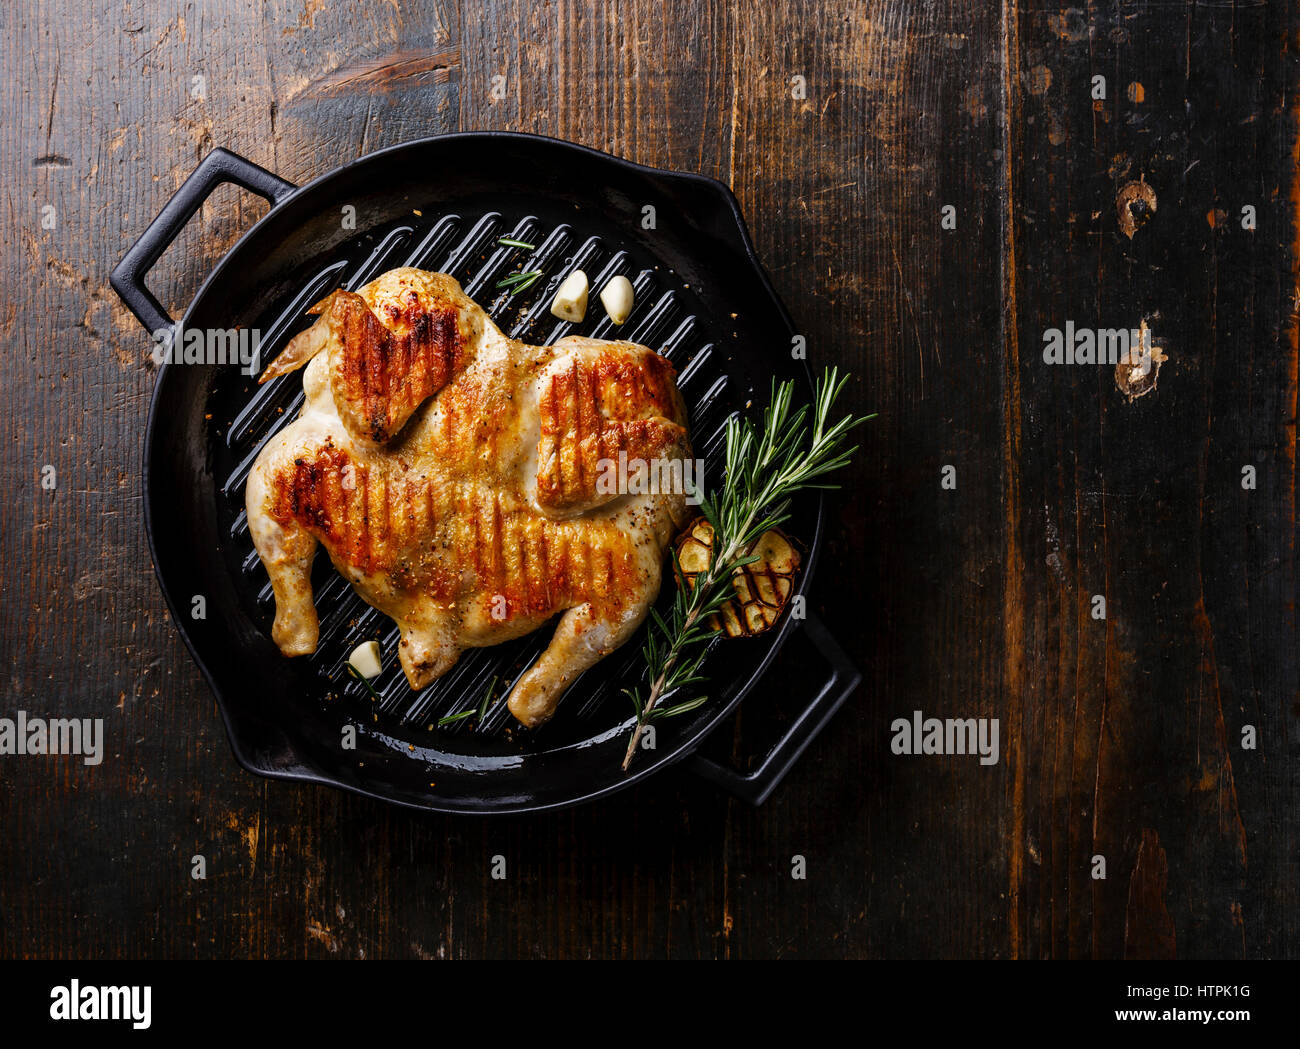 Poêlée de poulet rôti grillé dans une poêle Tabaka sur fond de bois copy space Banque D'Images